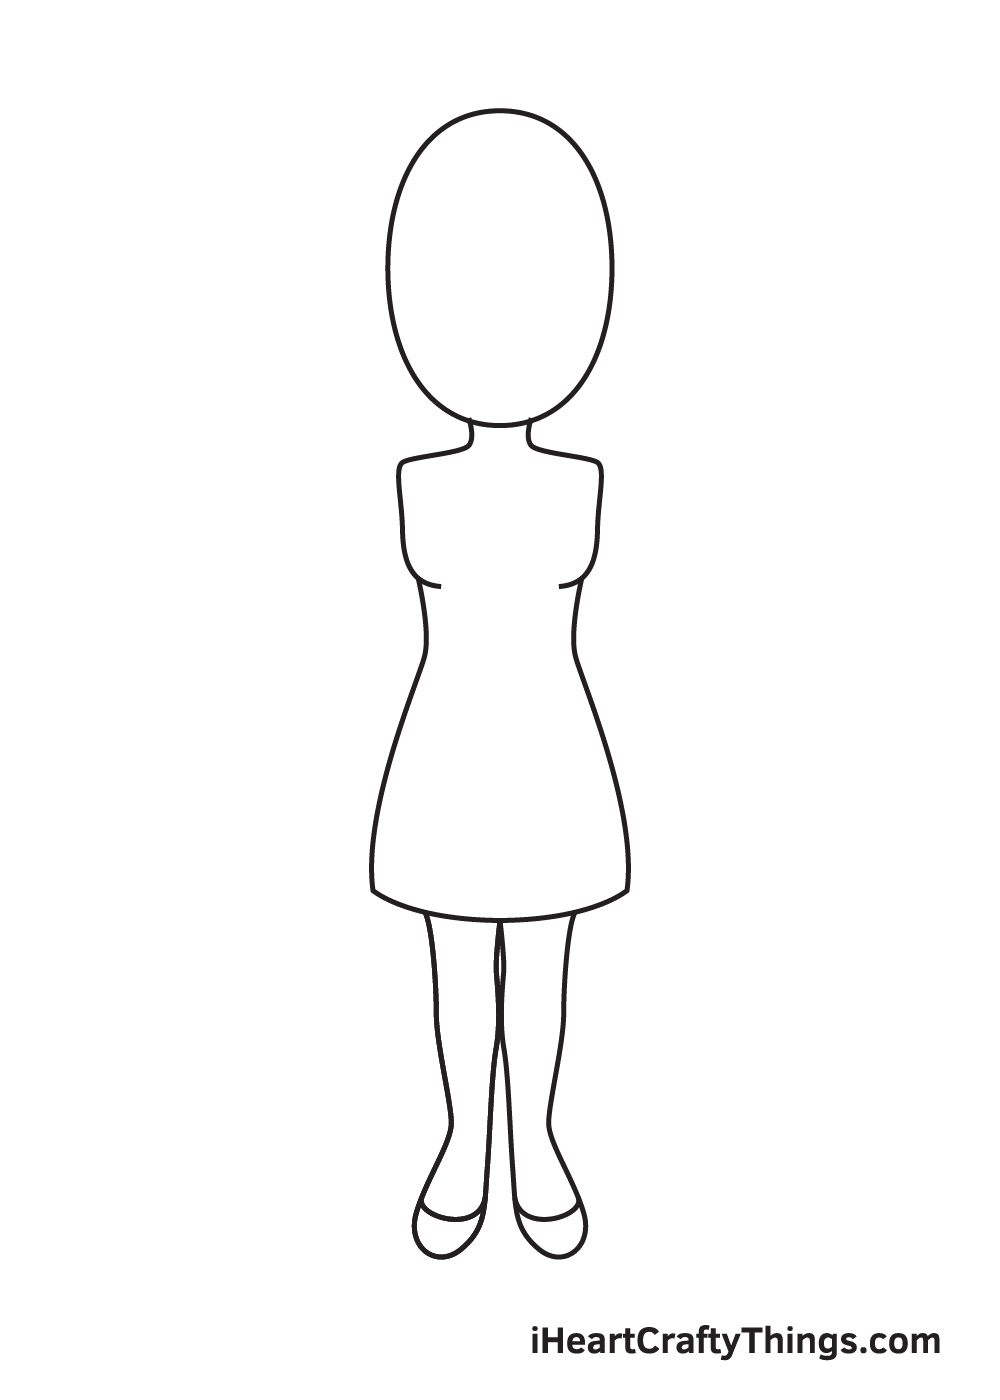 Woman DRAWING – STEP 5 - Hướng dẫn chi tiết cách vẽ cô gái đơn giản với 9 bước cơ bản